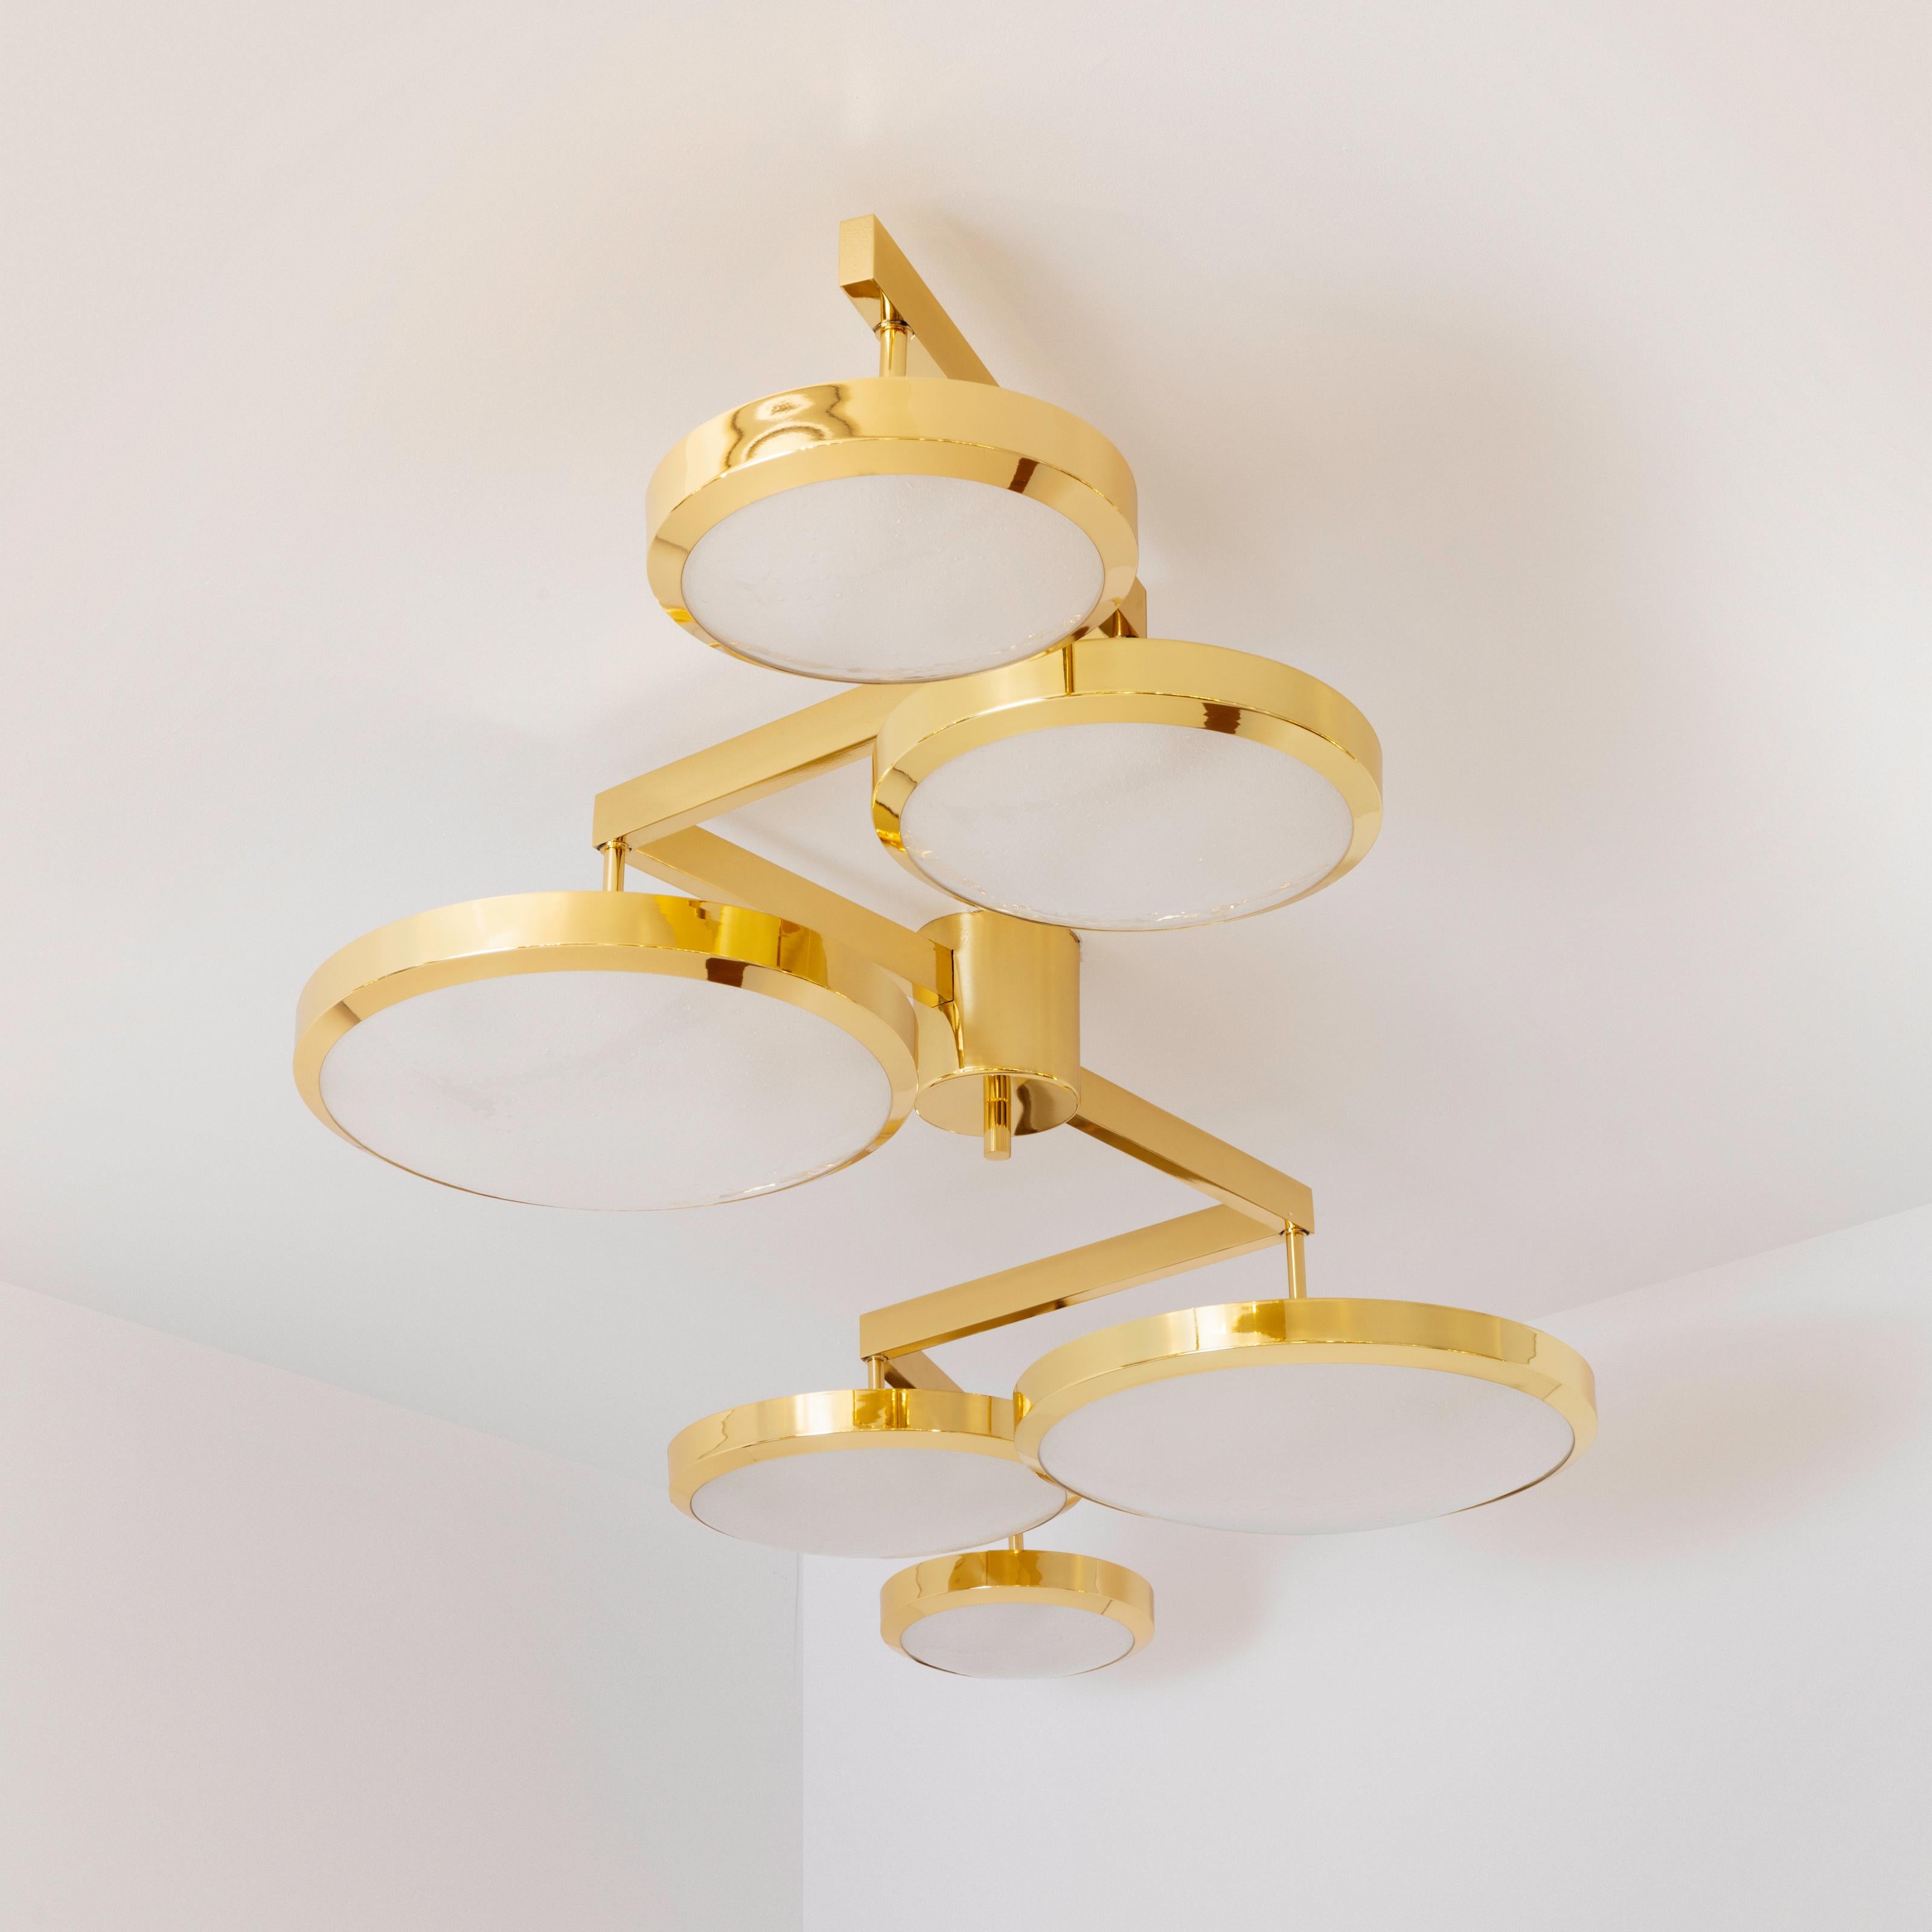 Contemporary Geometria Sospesa Ceiling Light by Gaspare Asaro-Brunito Nero Finish For Sale